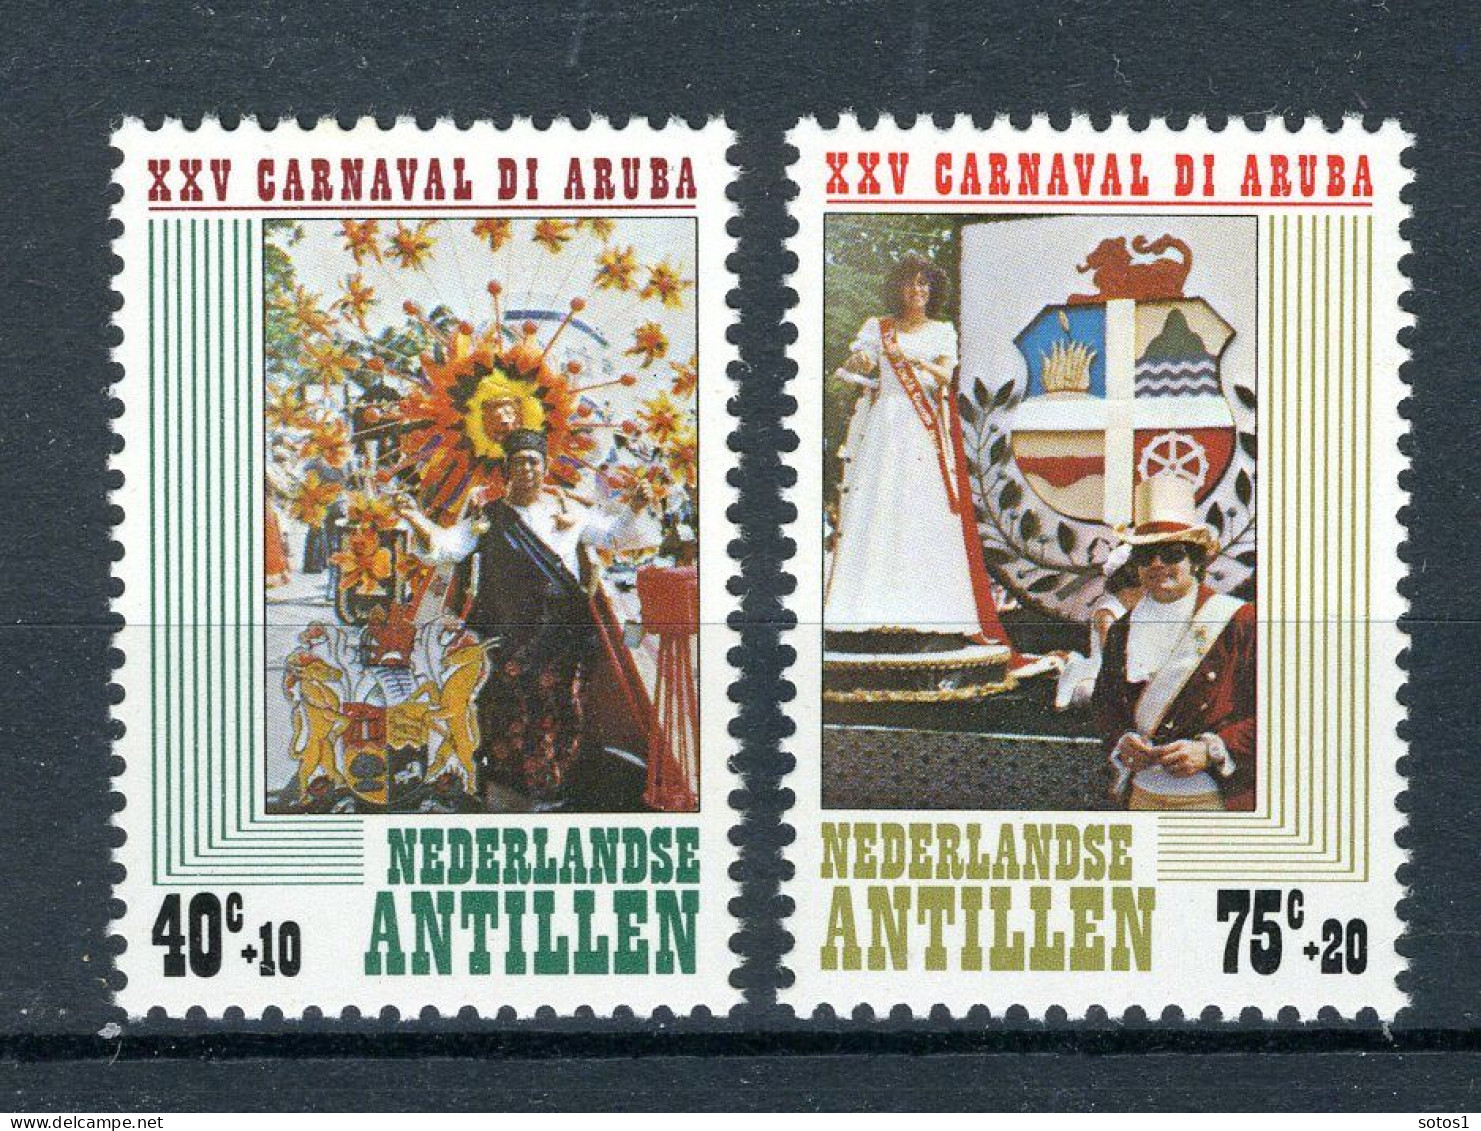 NL. ANTILLEN 616/617 MNH 1979 - 25 Jaar Stichting Arubaanse Carnaval. - Curacao, Netherlands Antilles, Aruba